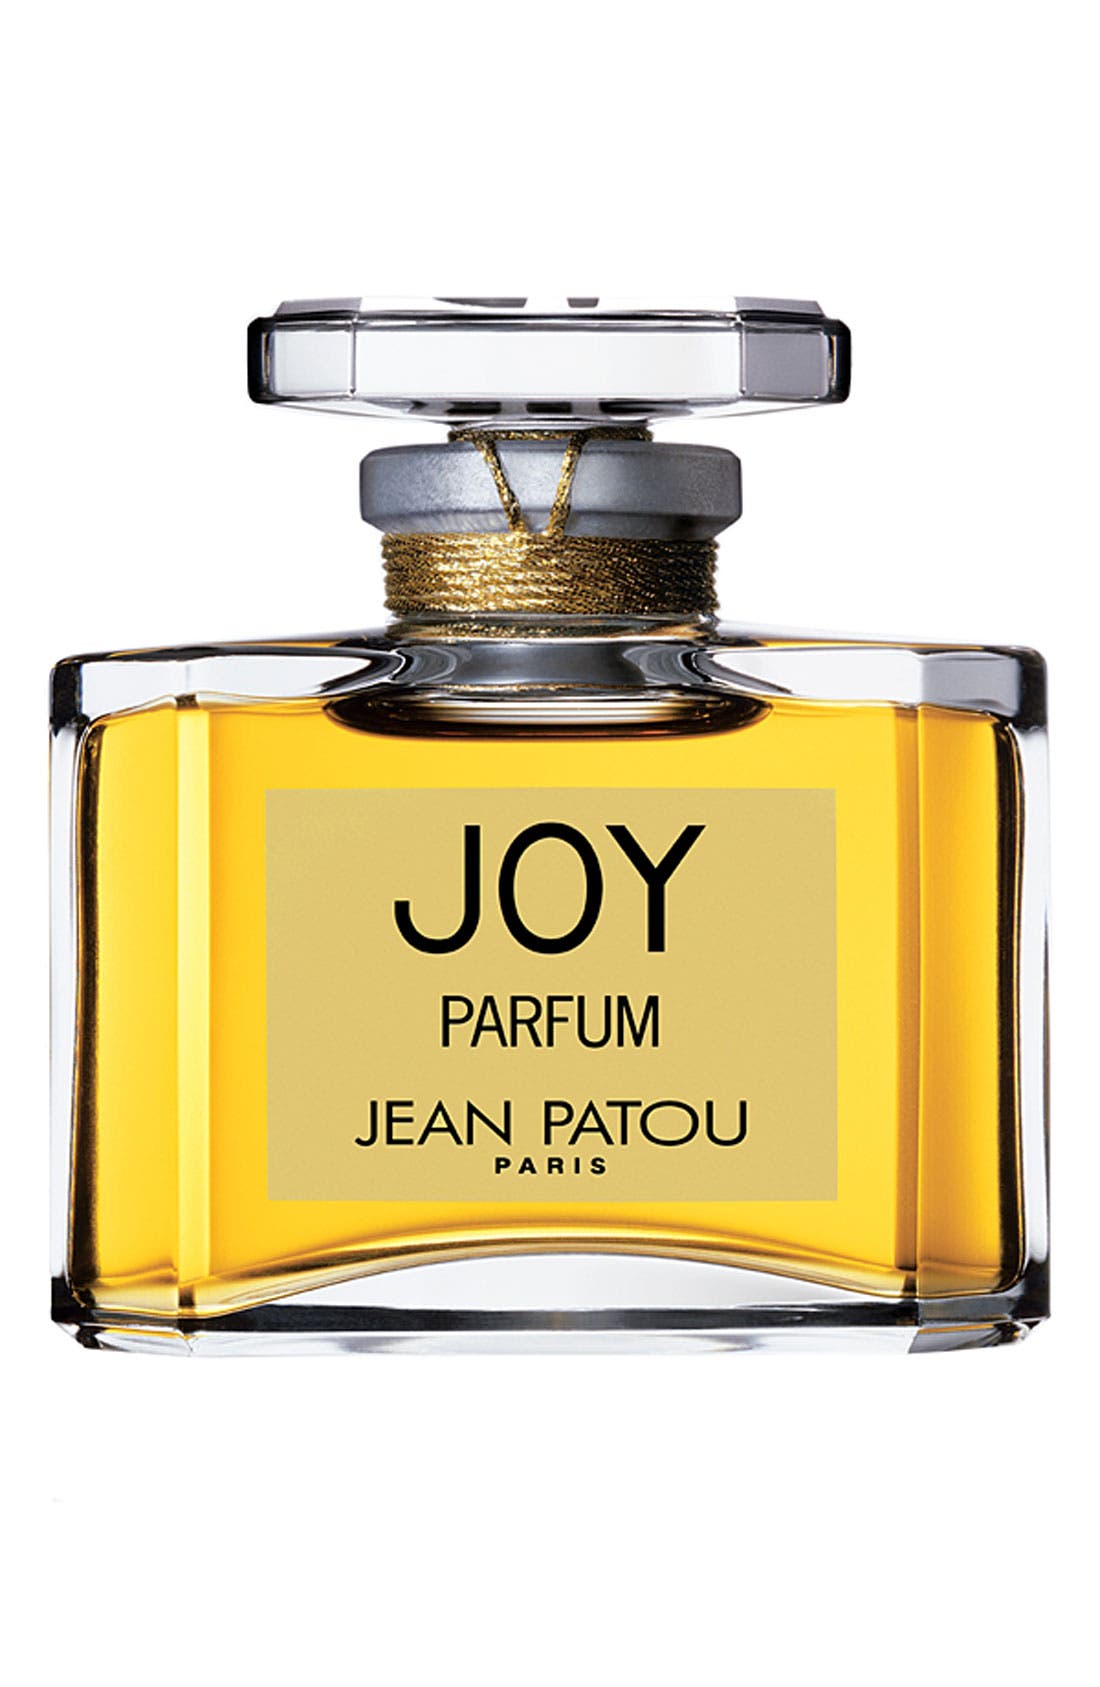 joy by jean patou price